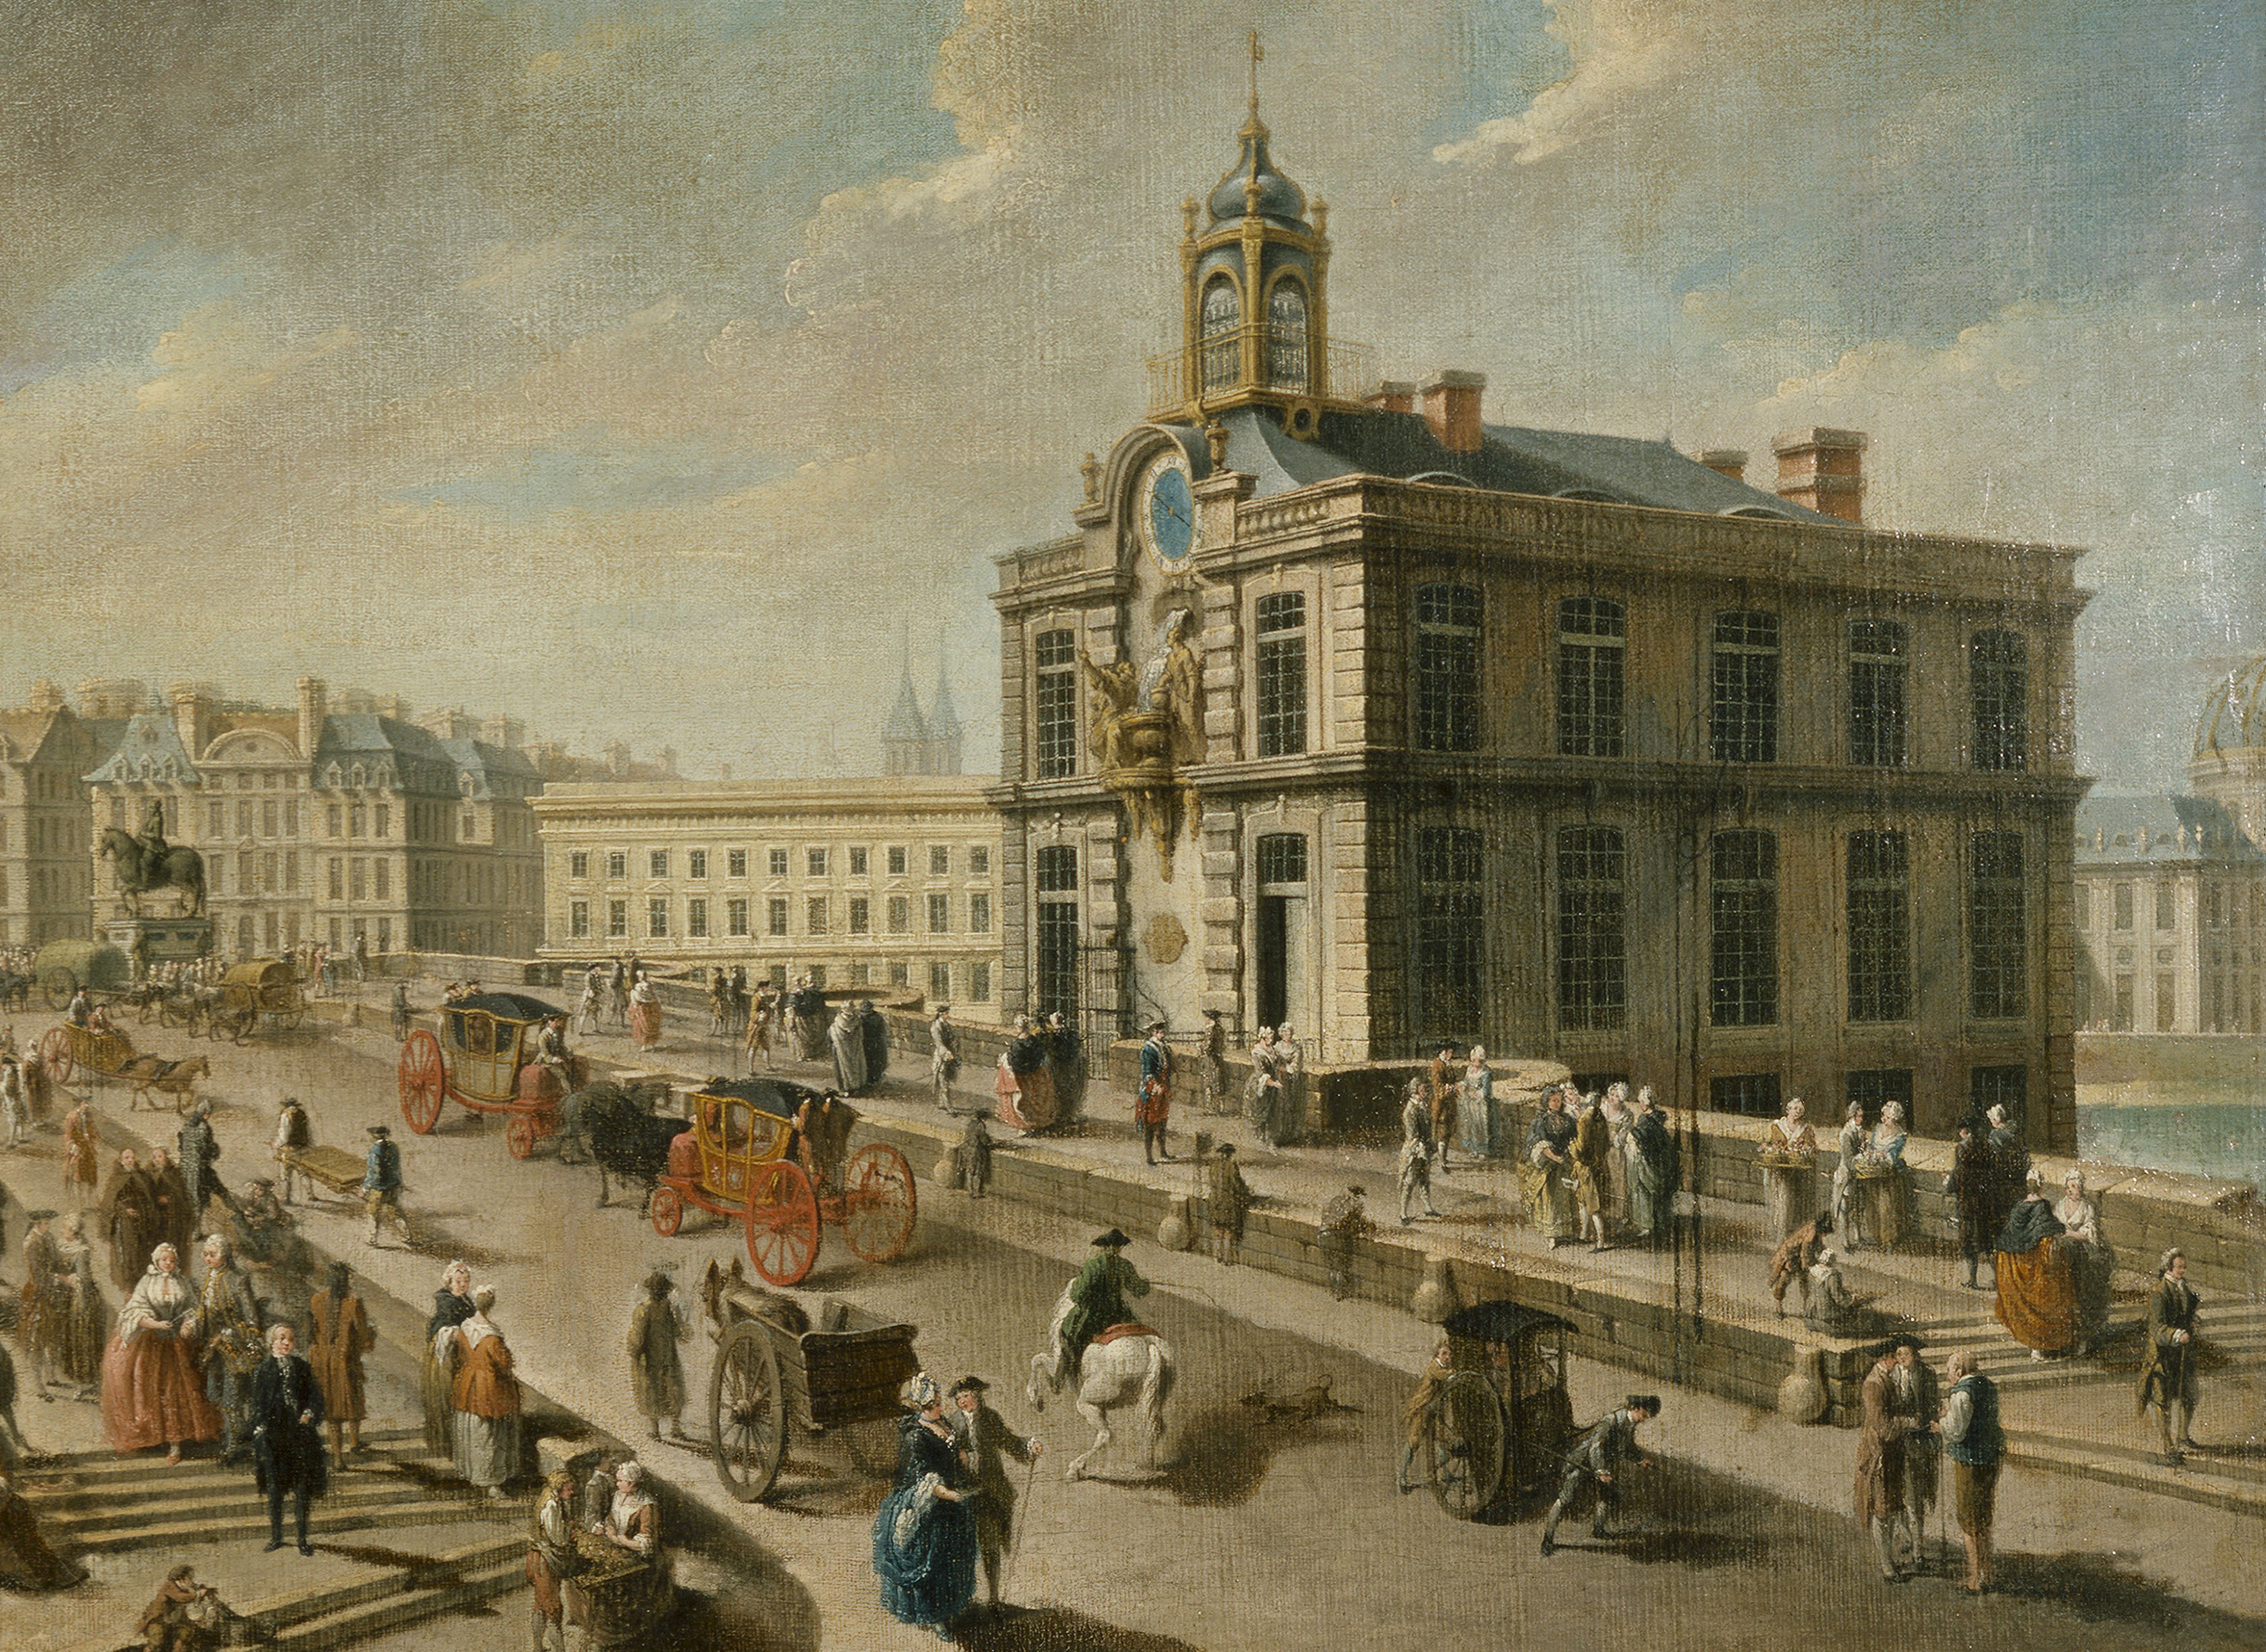 Nicolas-Jean-Baptiste Raguenet (1715-1793). "Le Pont-Neuf et la pompe de la Samaritaine, vus du quai de la MÈgisserie, 1777". Huile sur toile. Paris, musÈe Carnavalet.